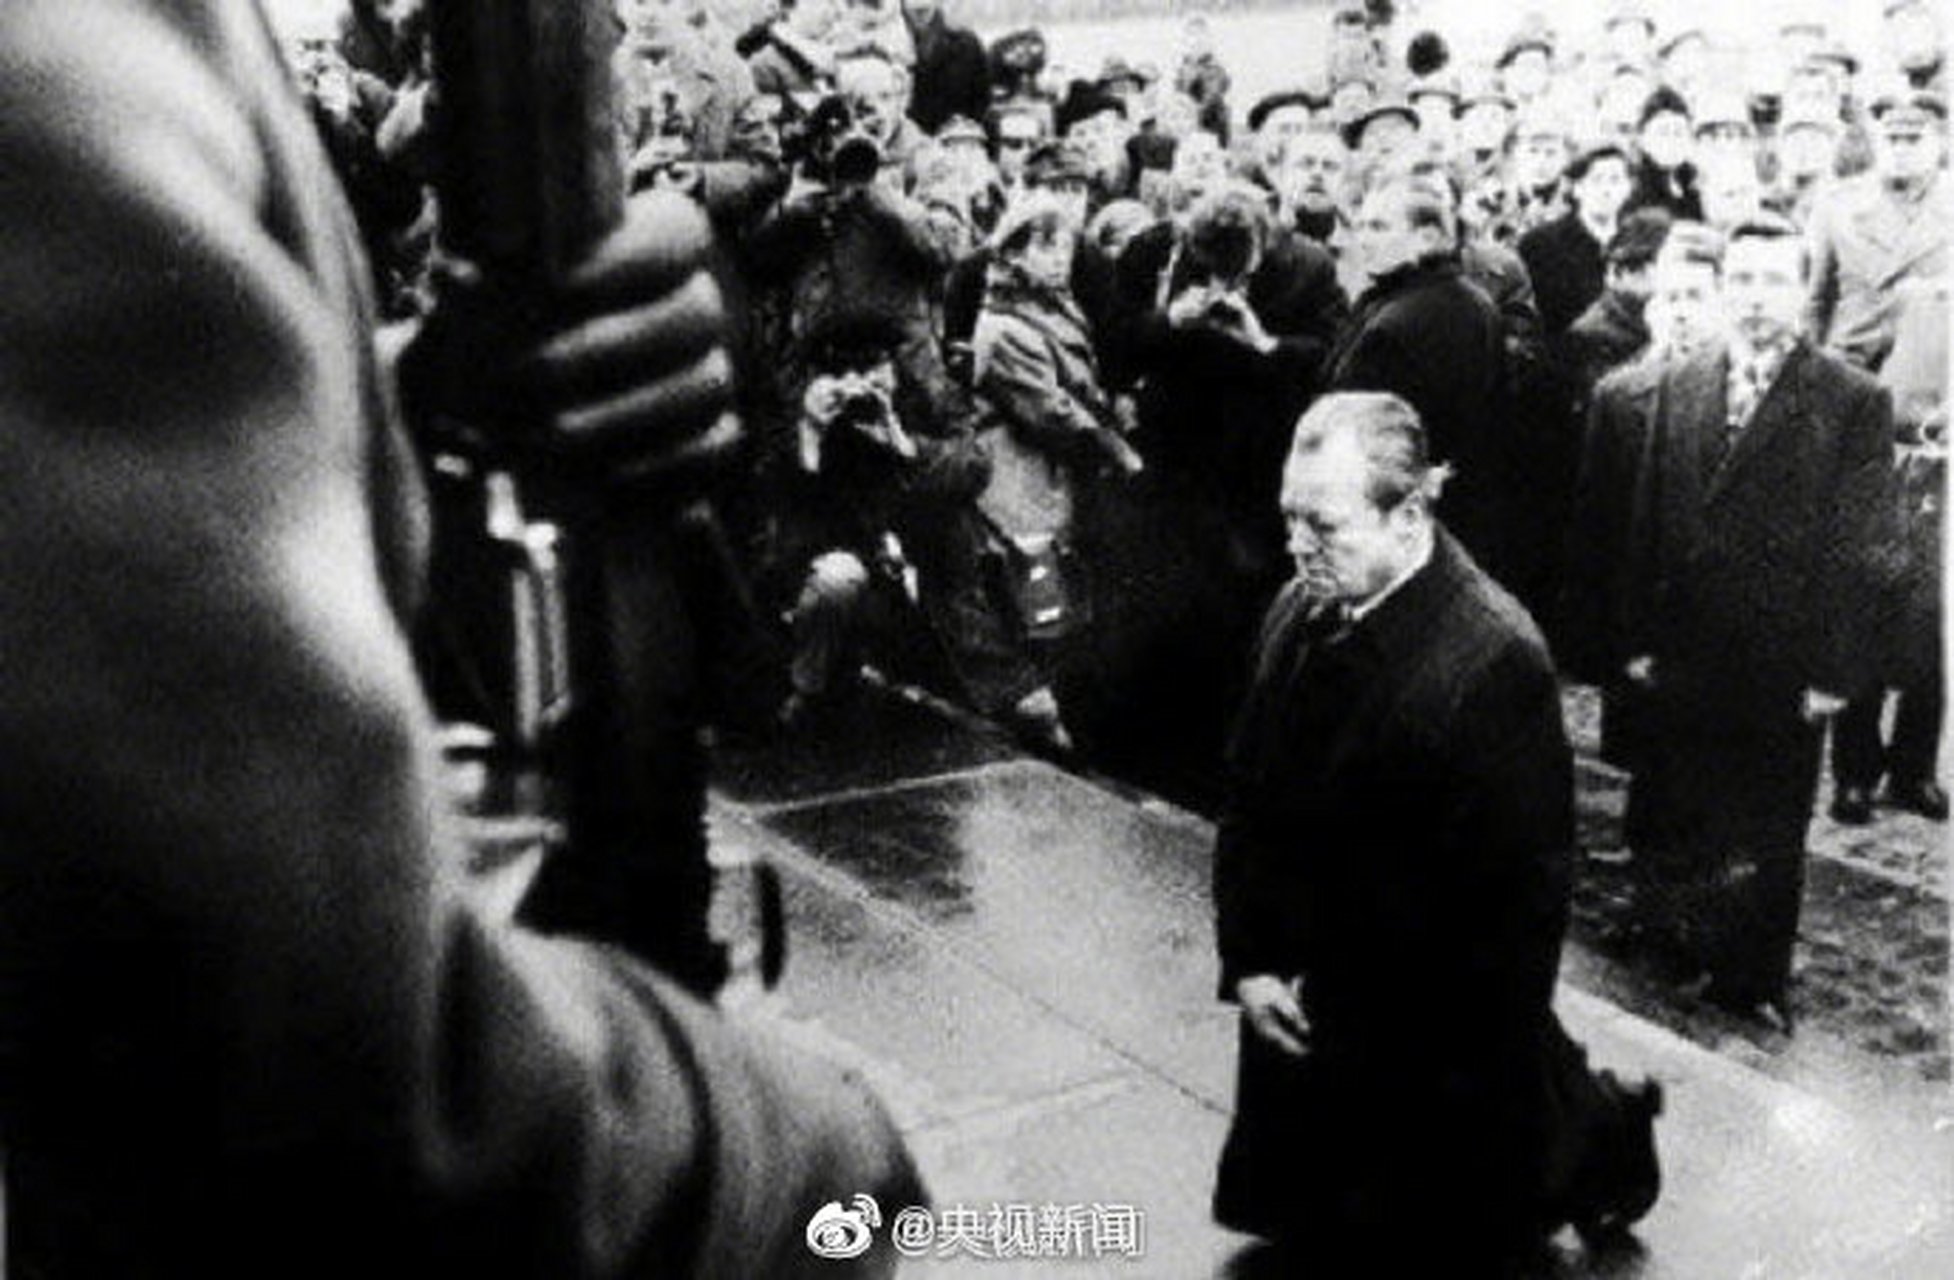 【那年今日丨华沙之跪】1970年的今天,西德总理勃兰特在向华沙犹太